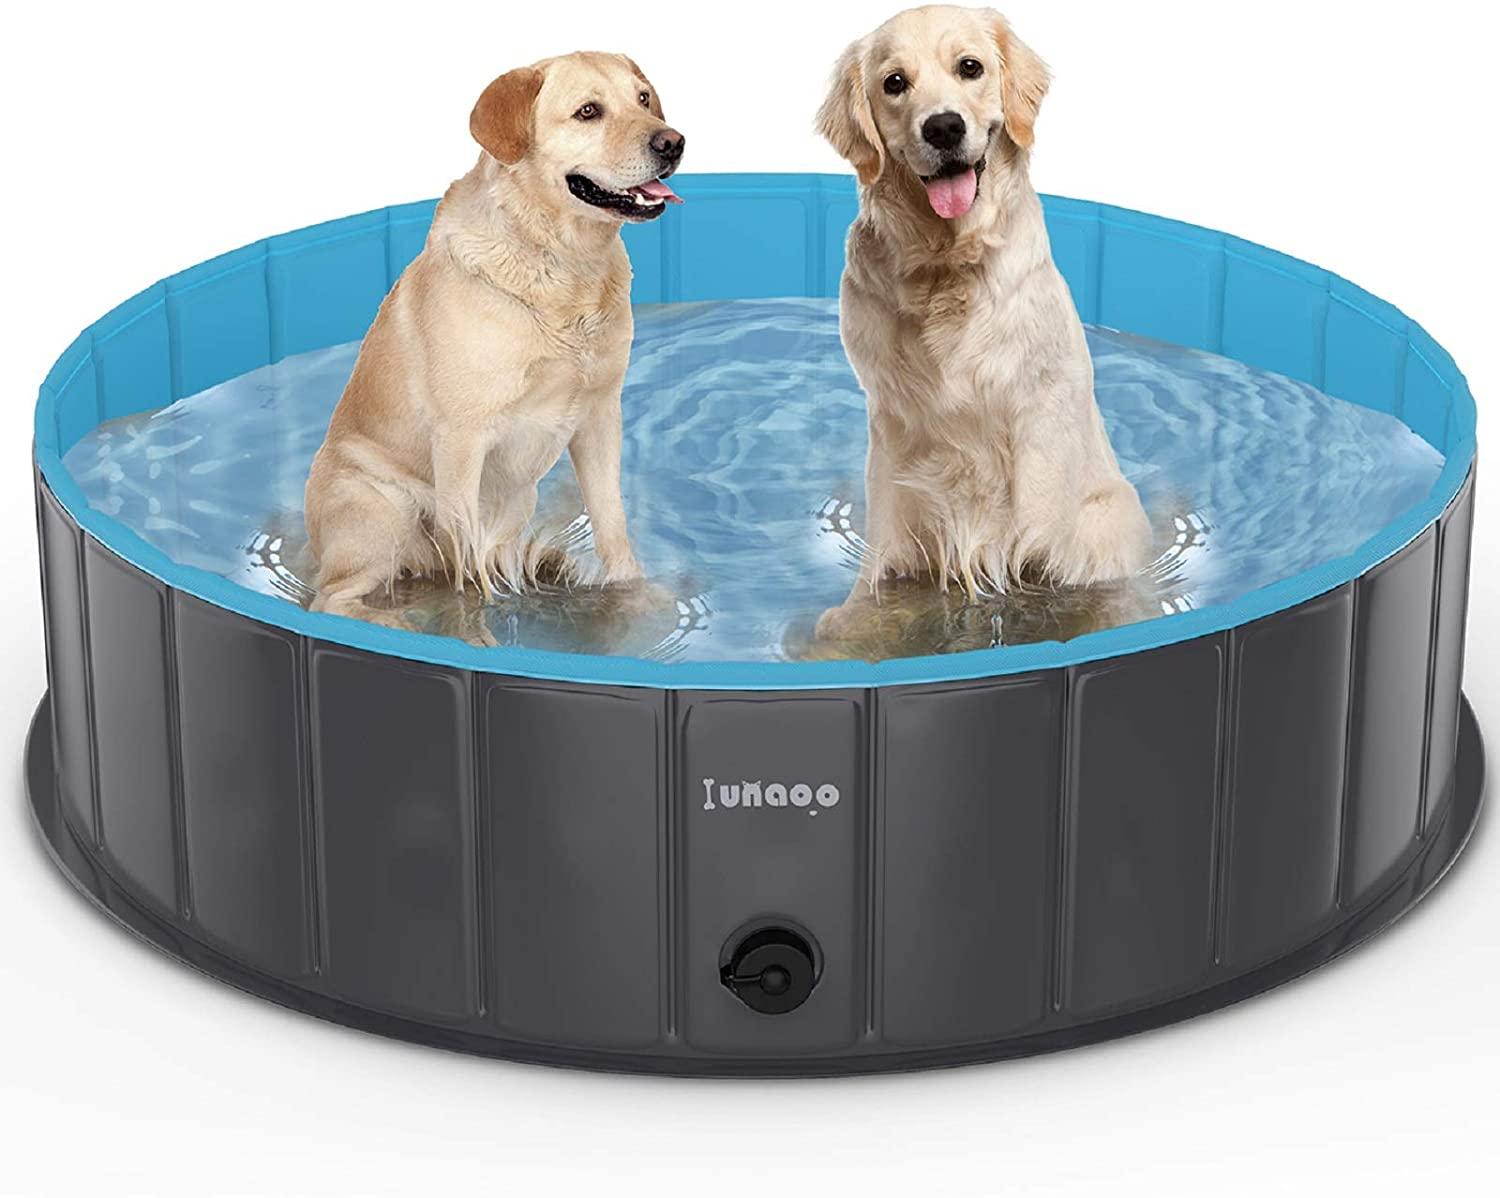 lunaoo Foldable Dog Pool for $16.75